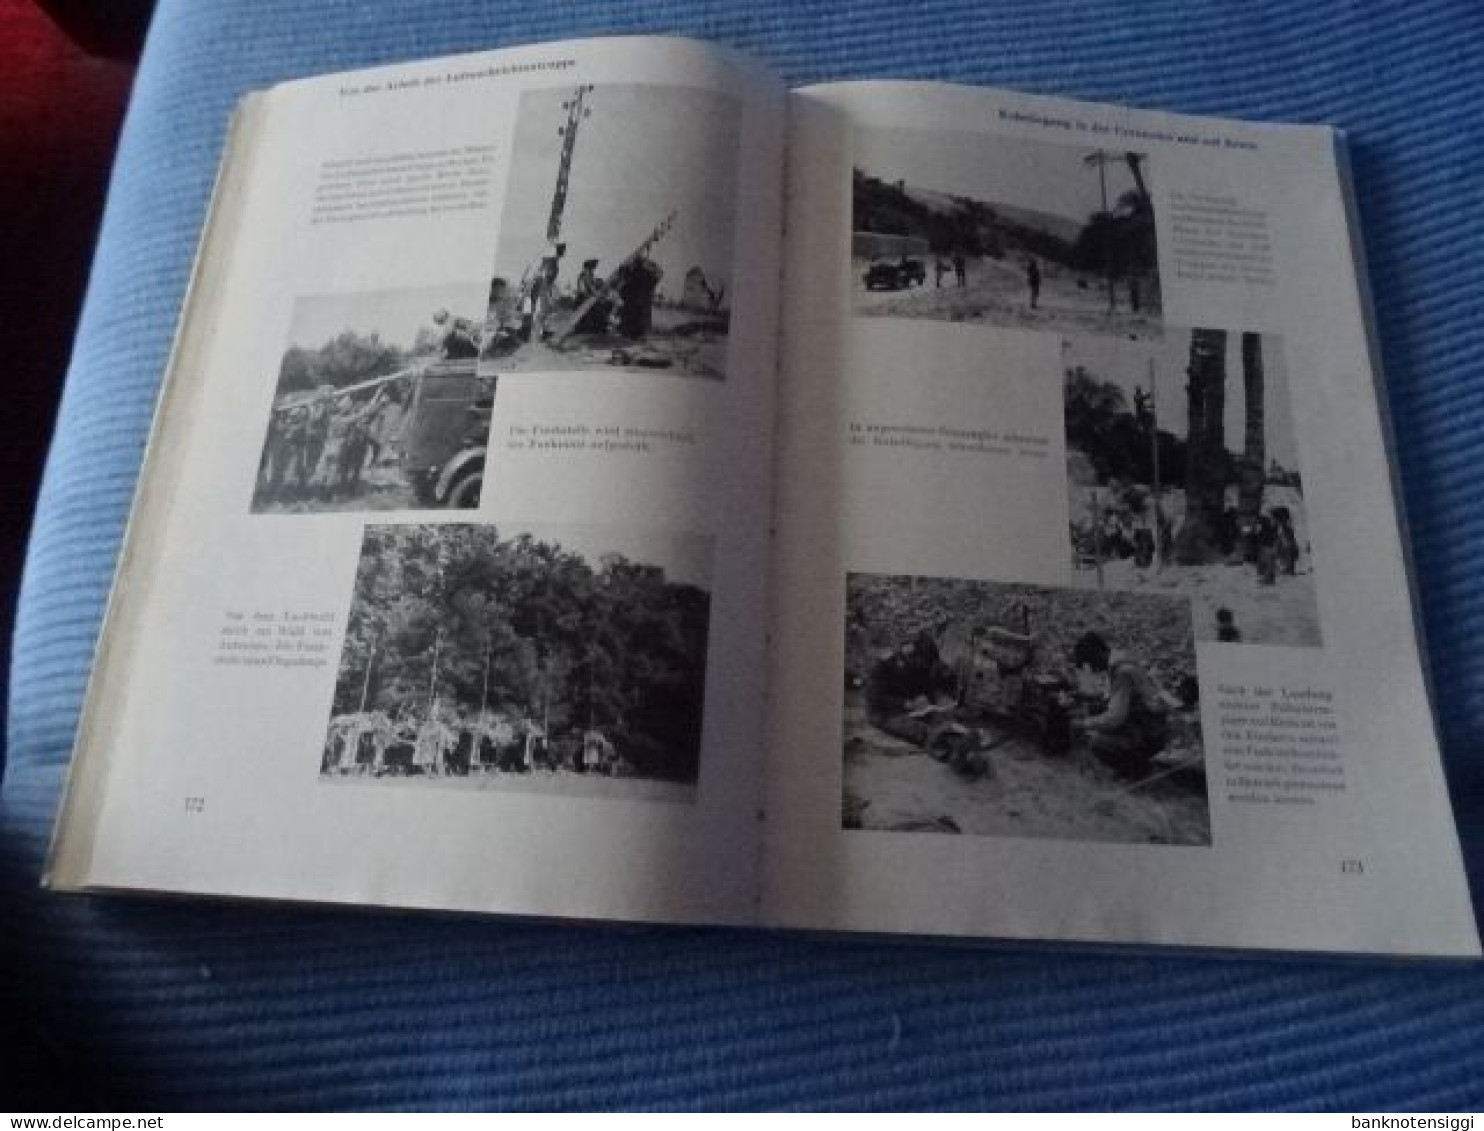 1 Buch "Jahrbuch der Deutschen Luftwaffe 1942